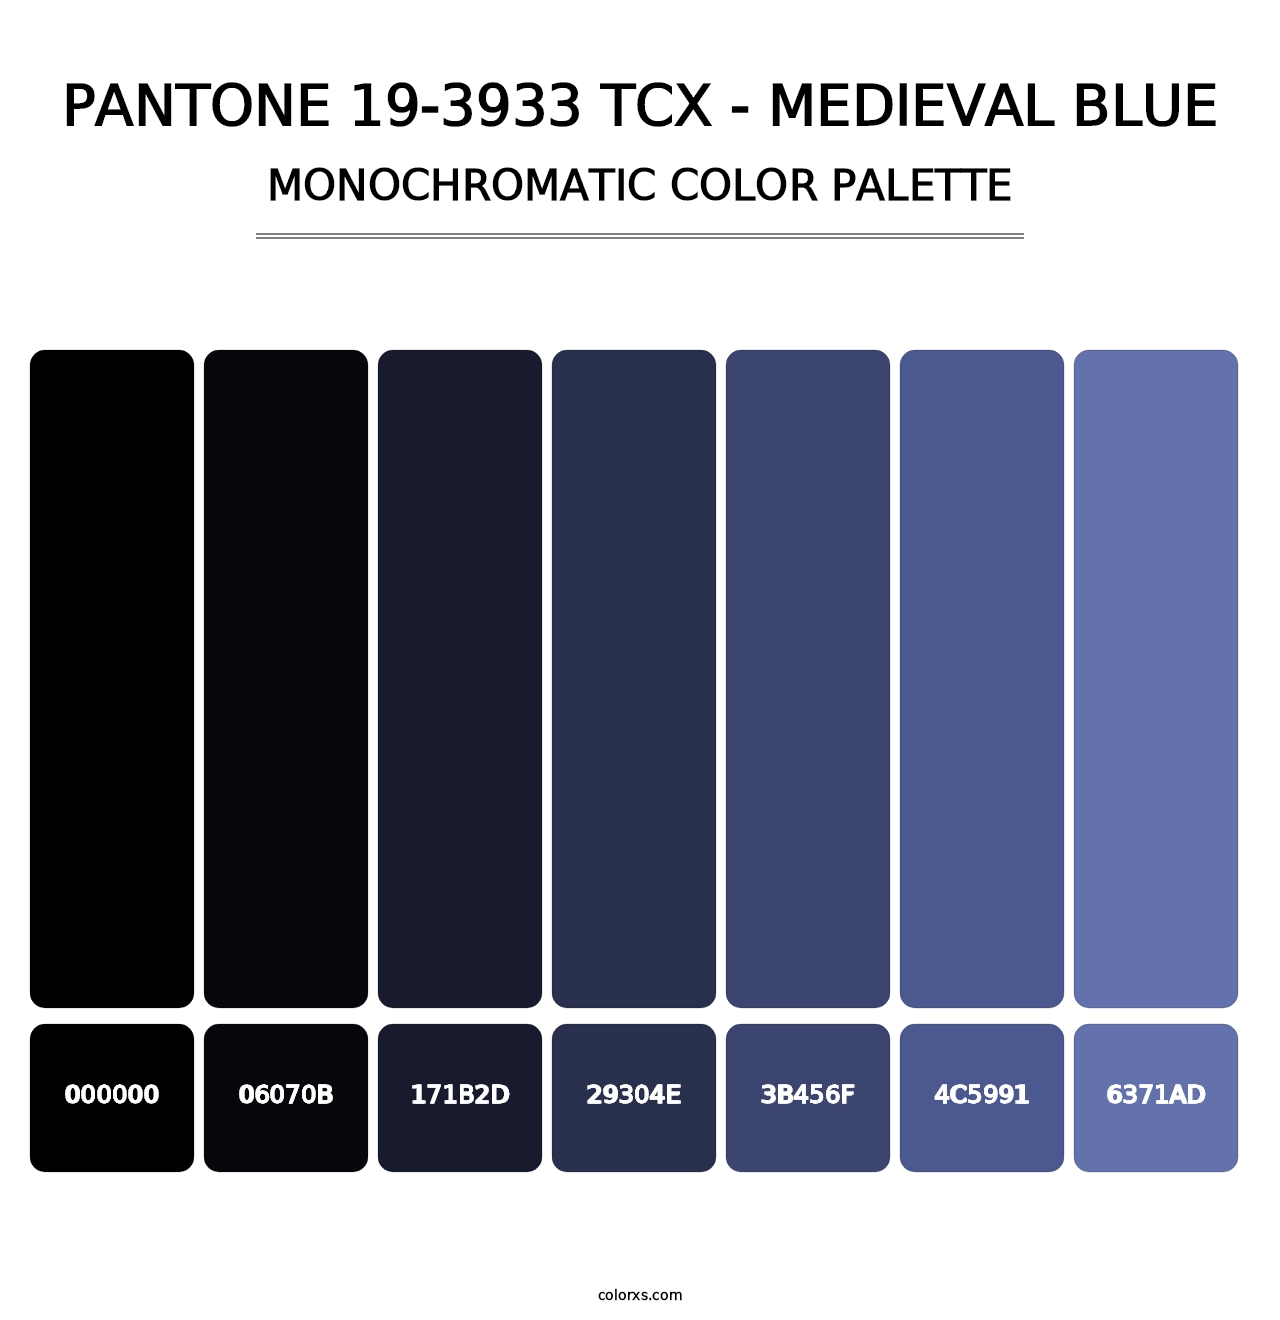 PANTONE 19-3933 TCX - Medieval Blue - Monochromatic Color Palette